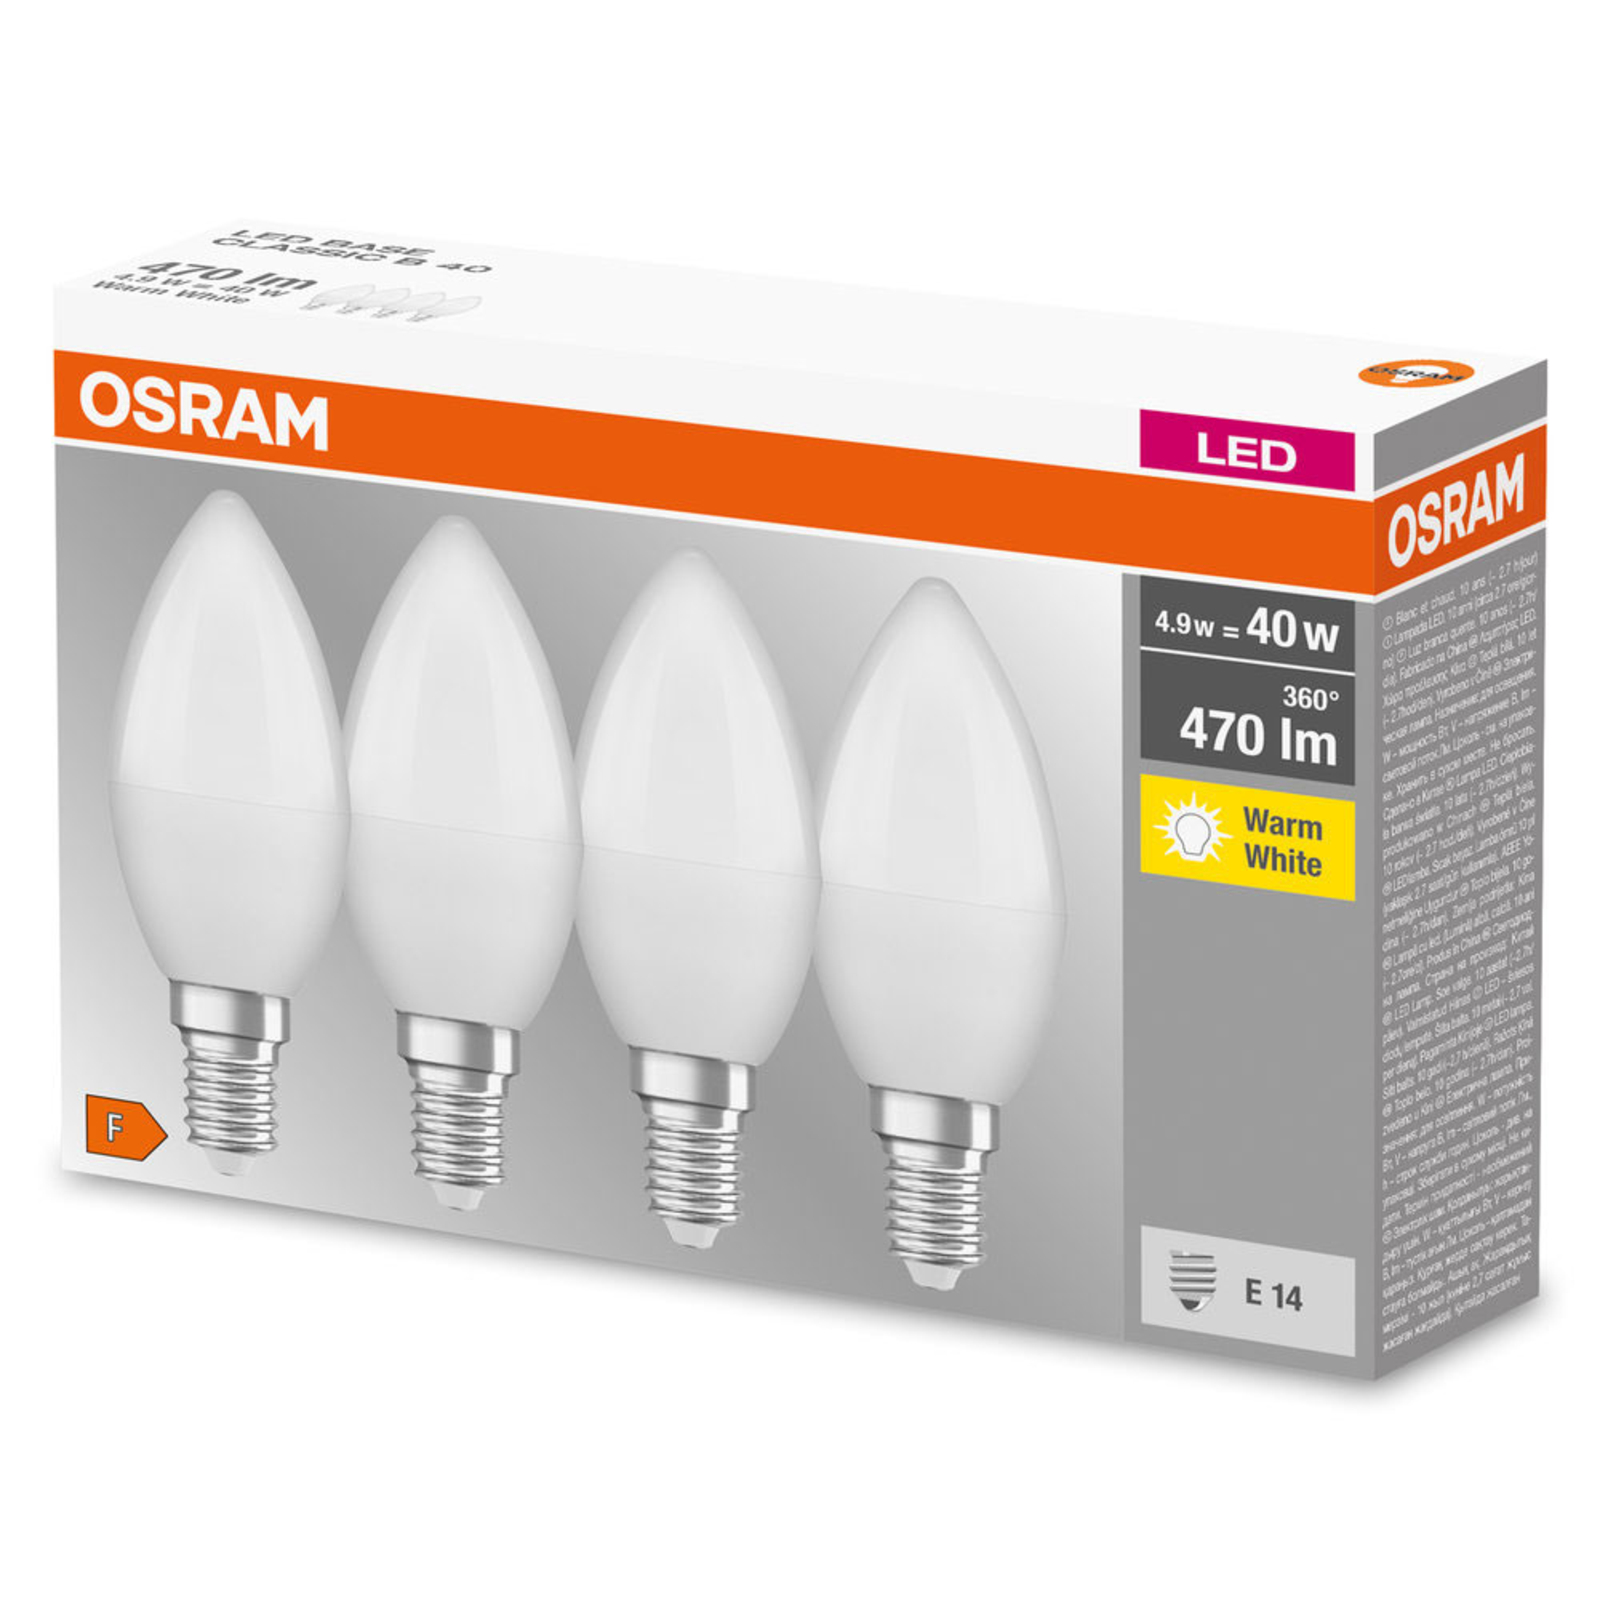 OSRAM vela LED E14 Base Retro 4,9W 4 ud 2.700K